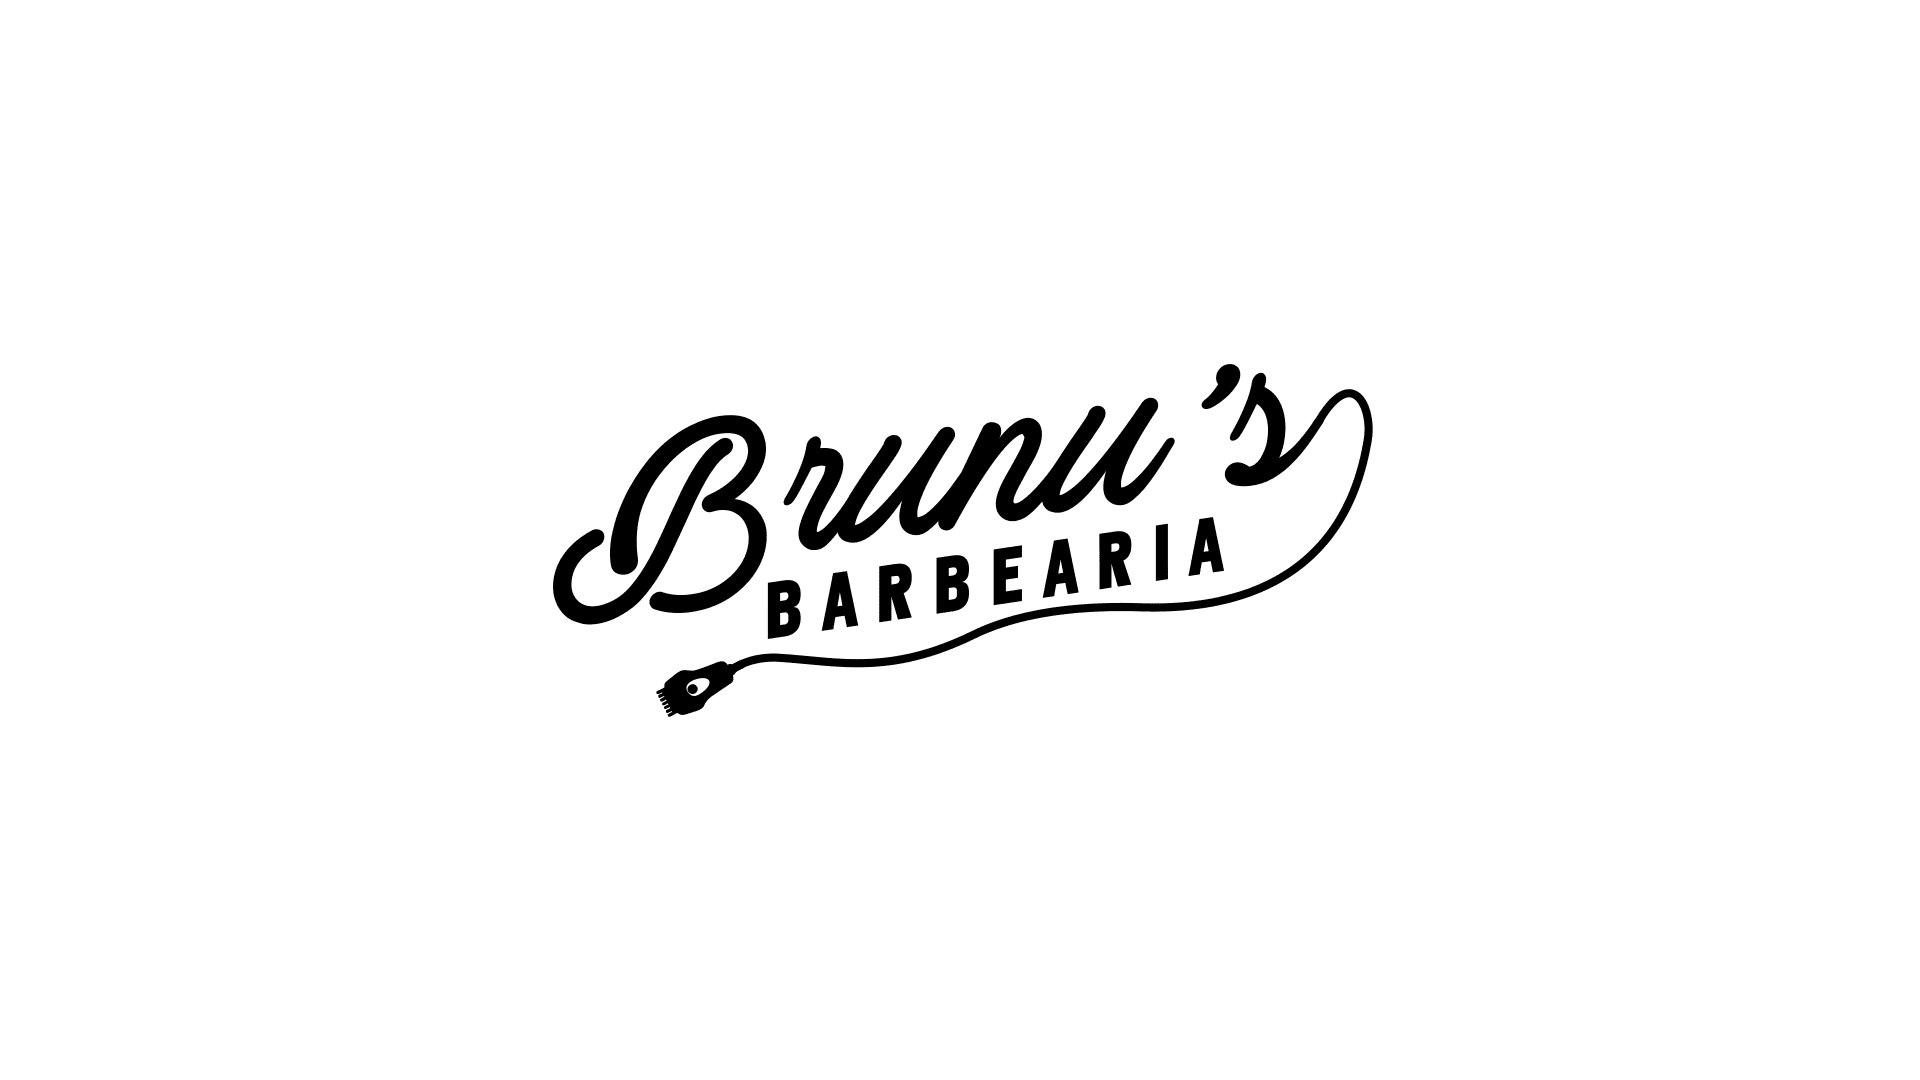 Brunus's Barbearia